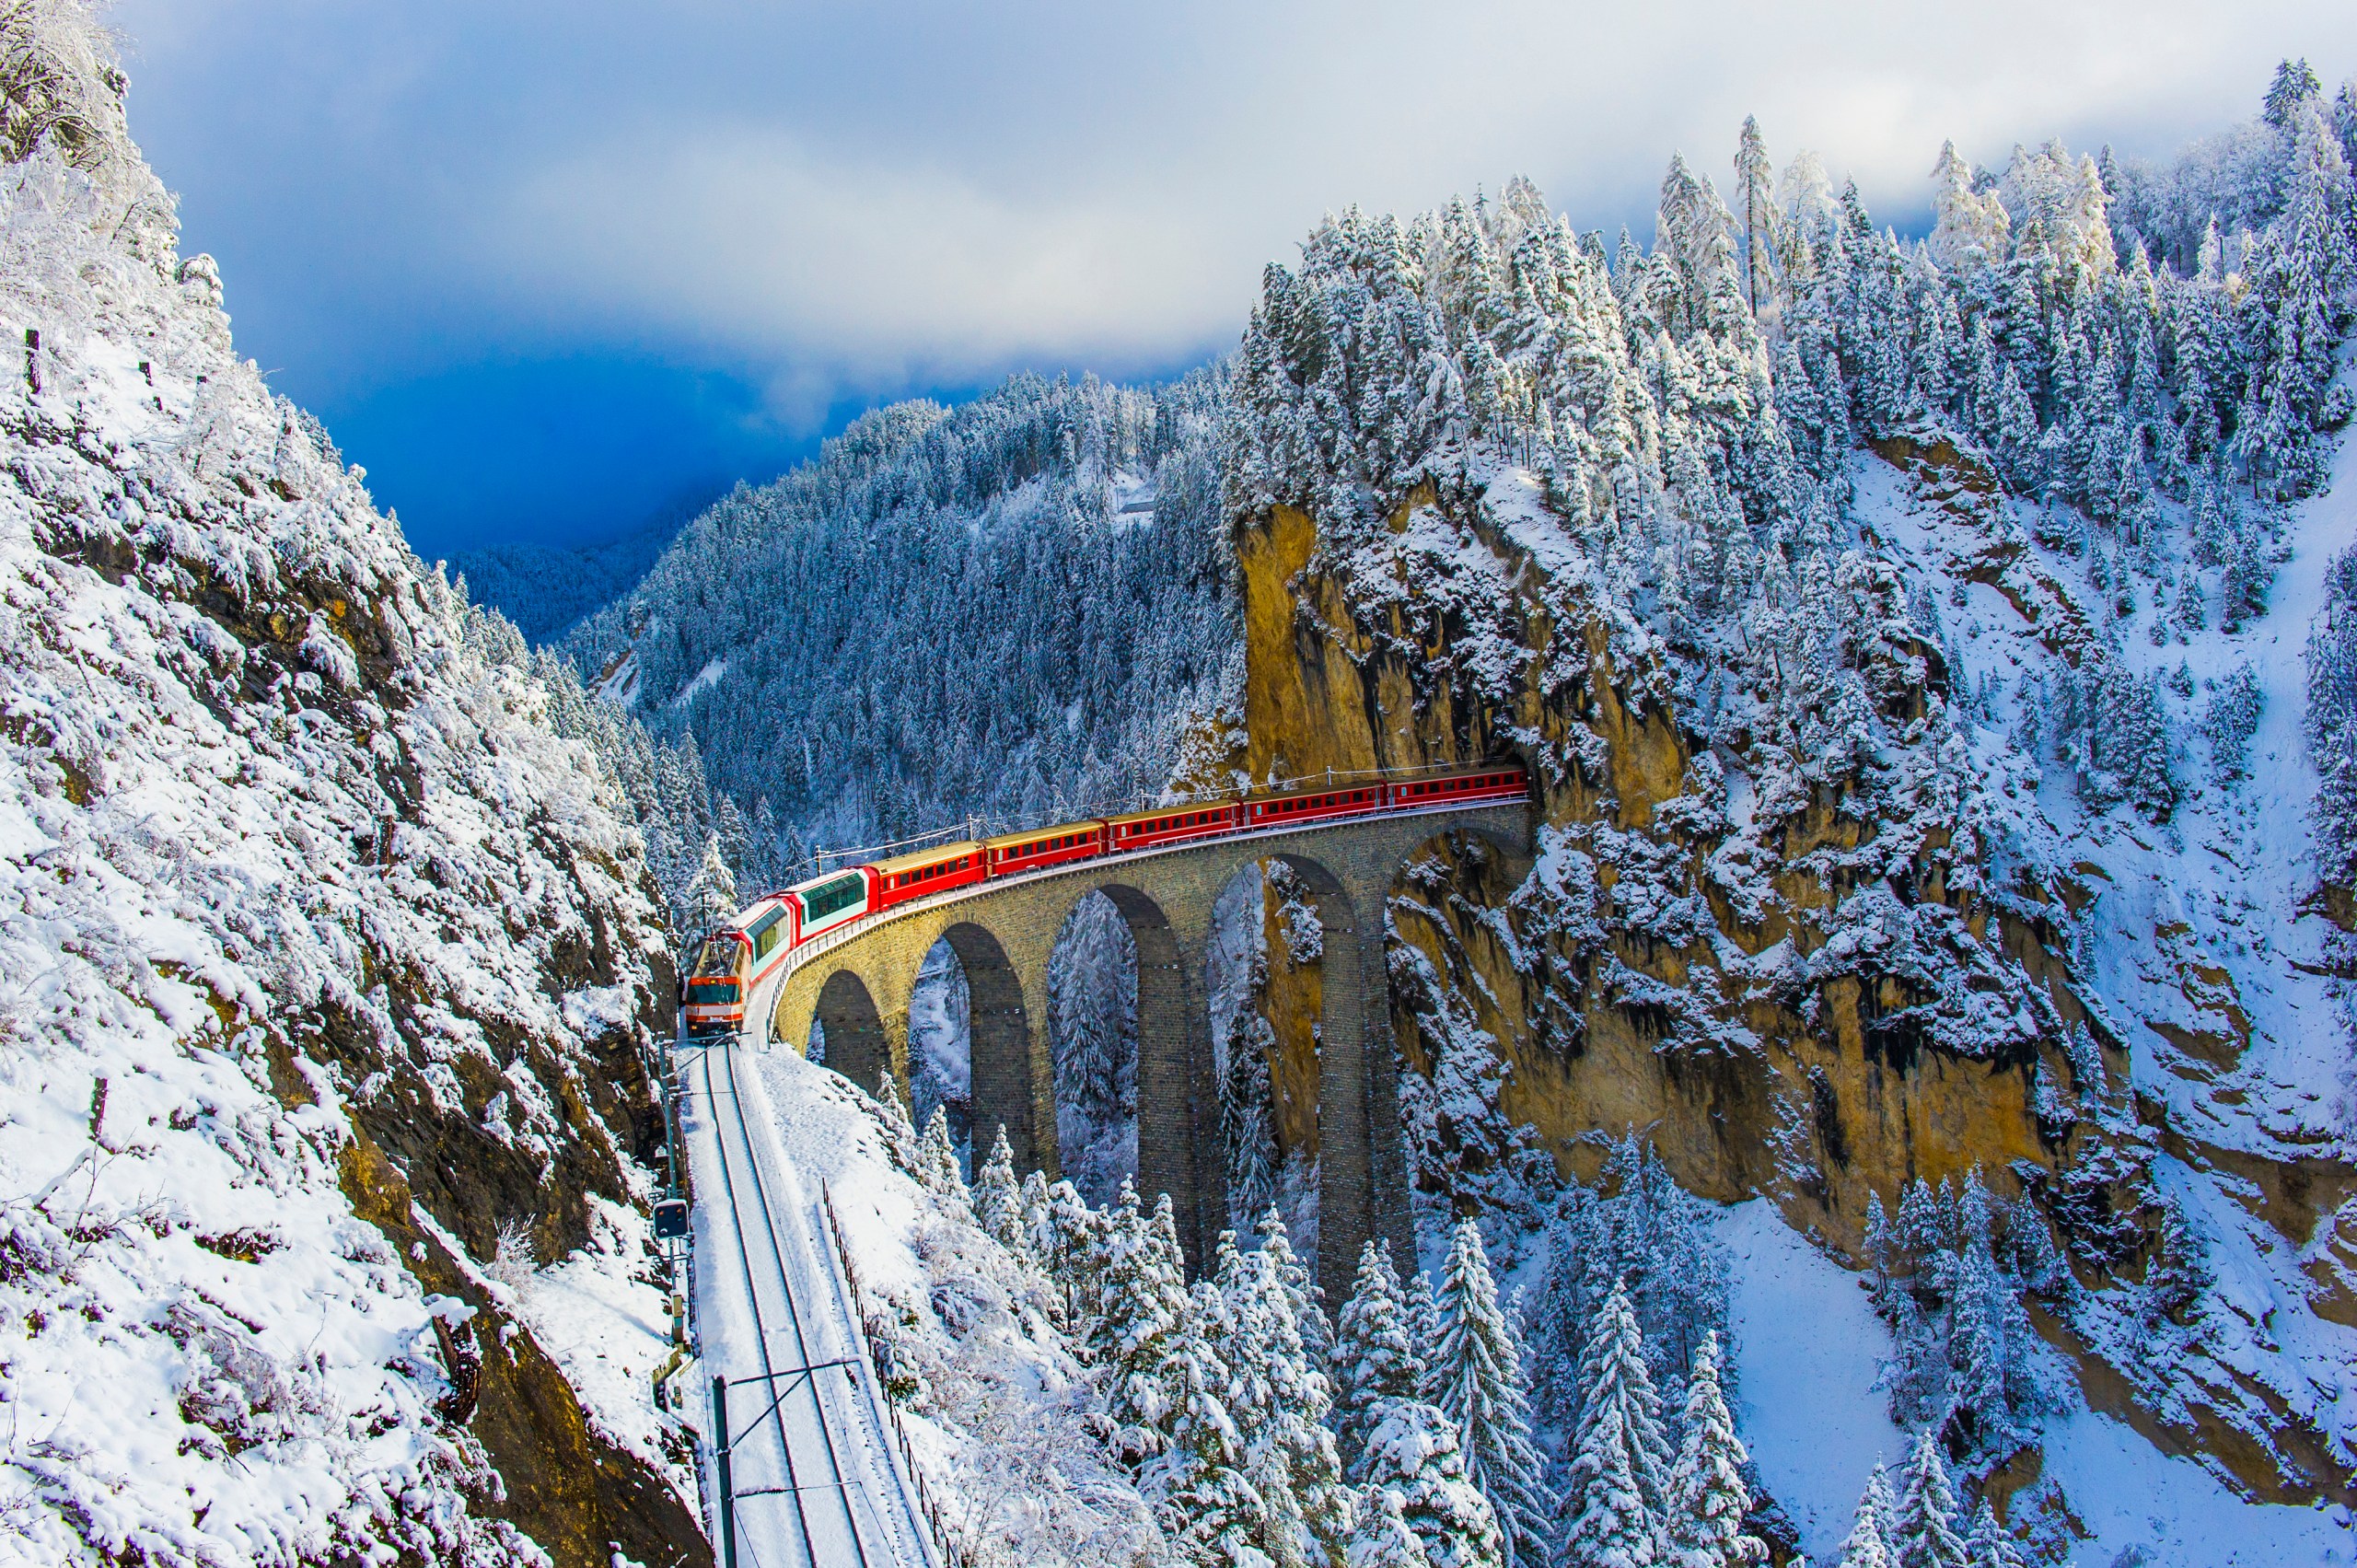 Landwasser Viaduct in Switzerland (Getty Images)